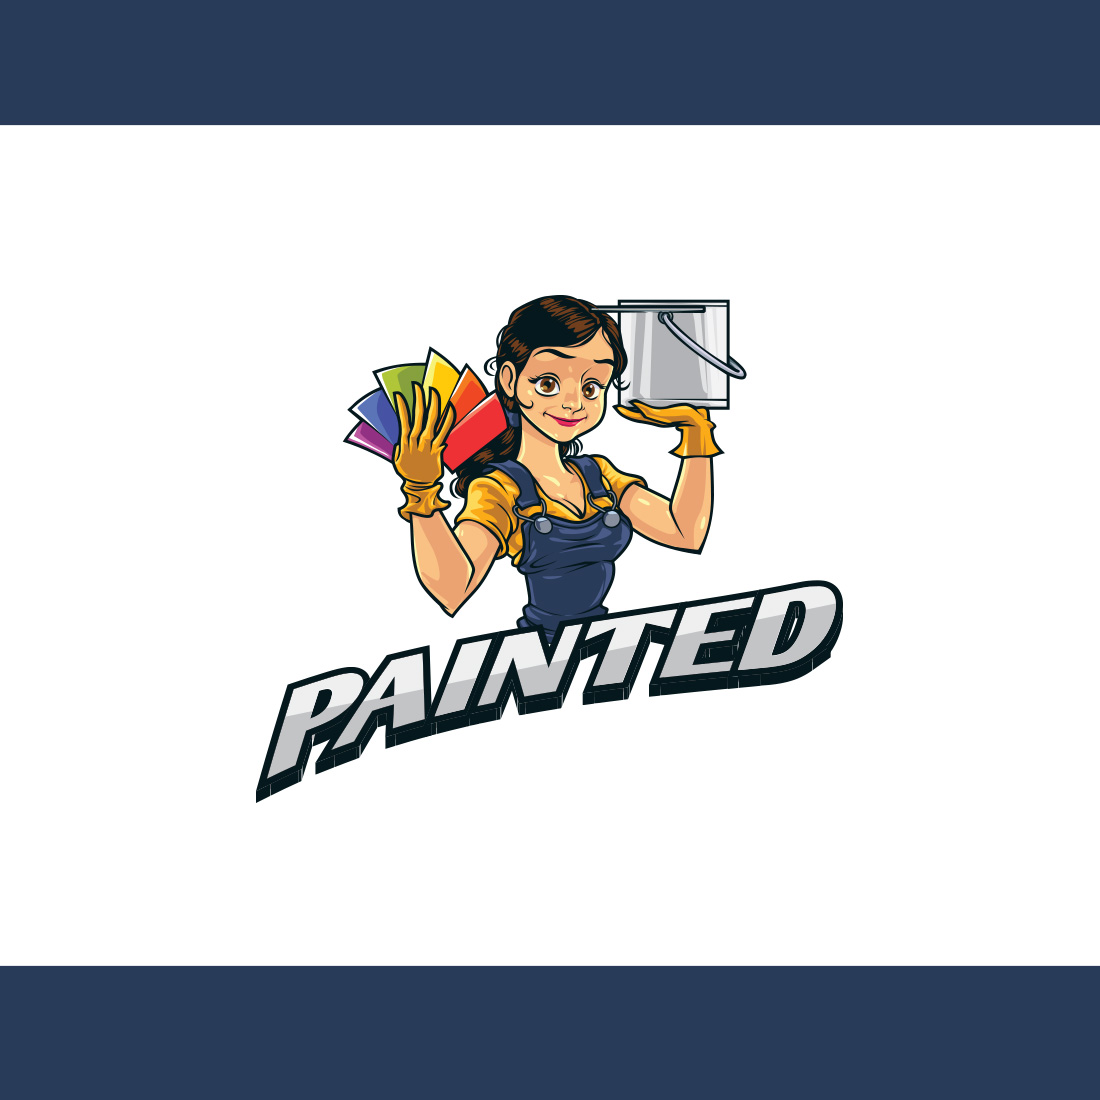 Painter Girl Mascot Logo cover image.